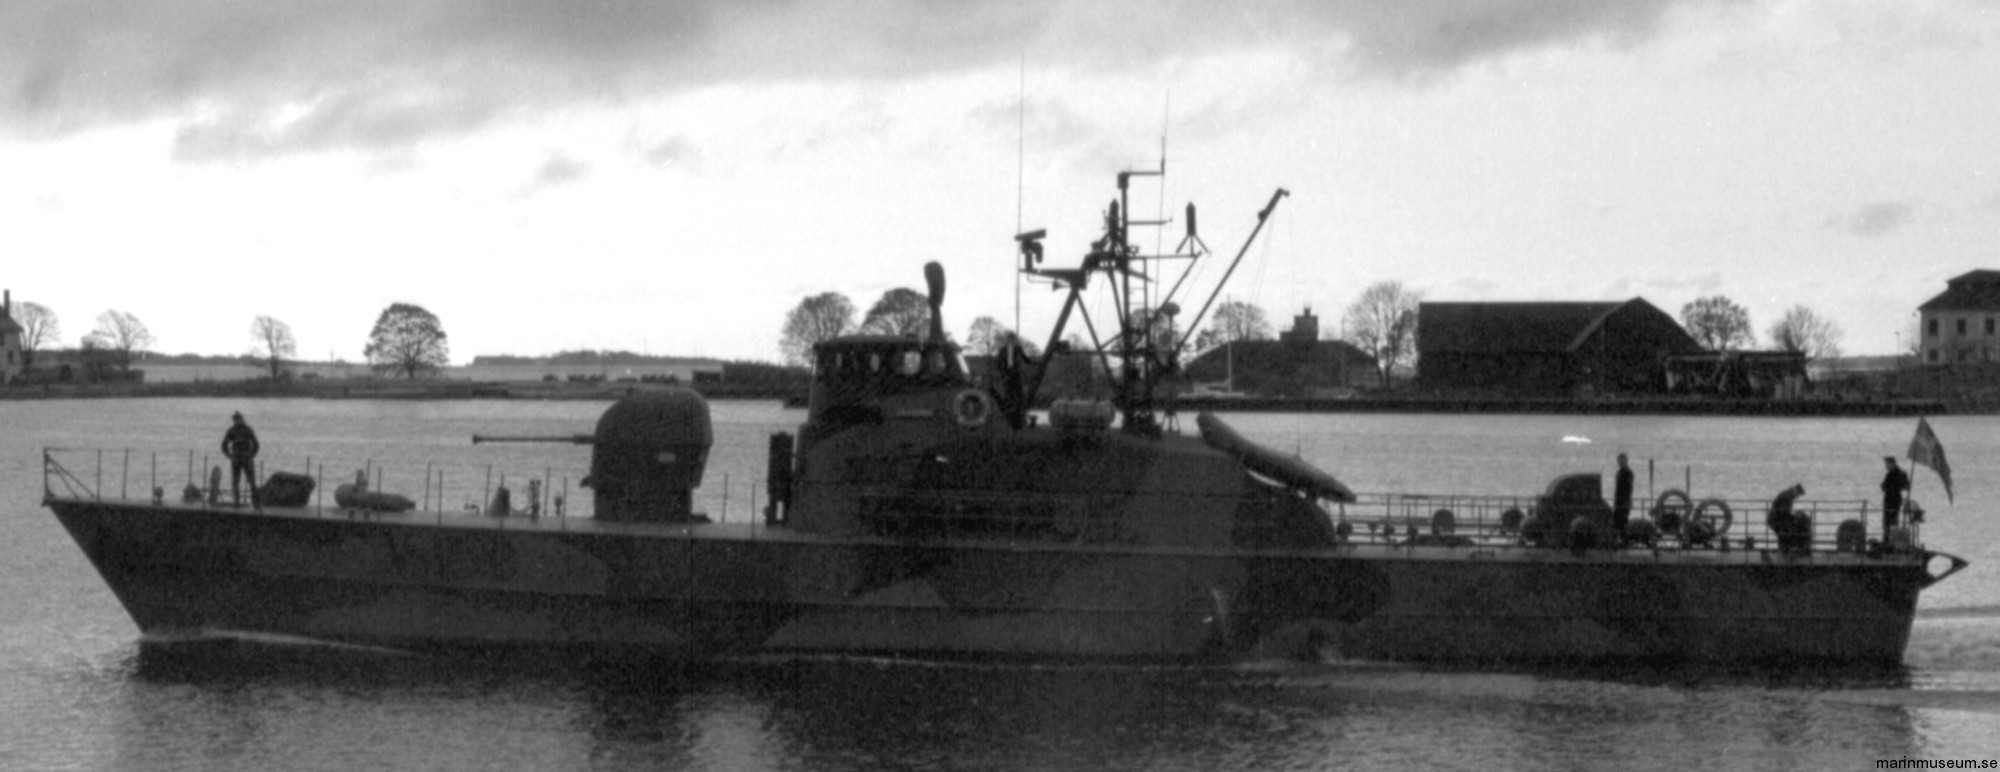 p150 v150 jägaren hms hswms patrol boat swedish navy svenska marinen 03